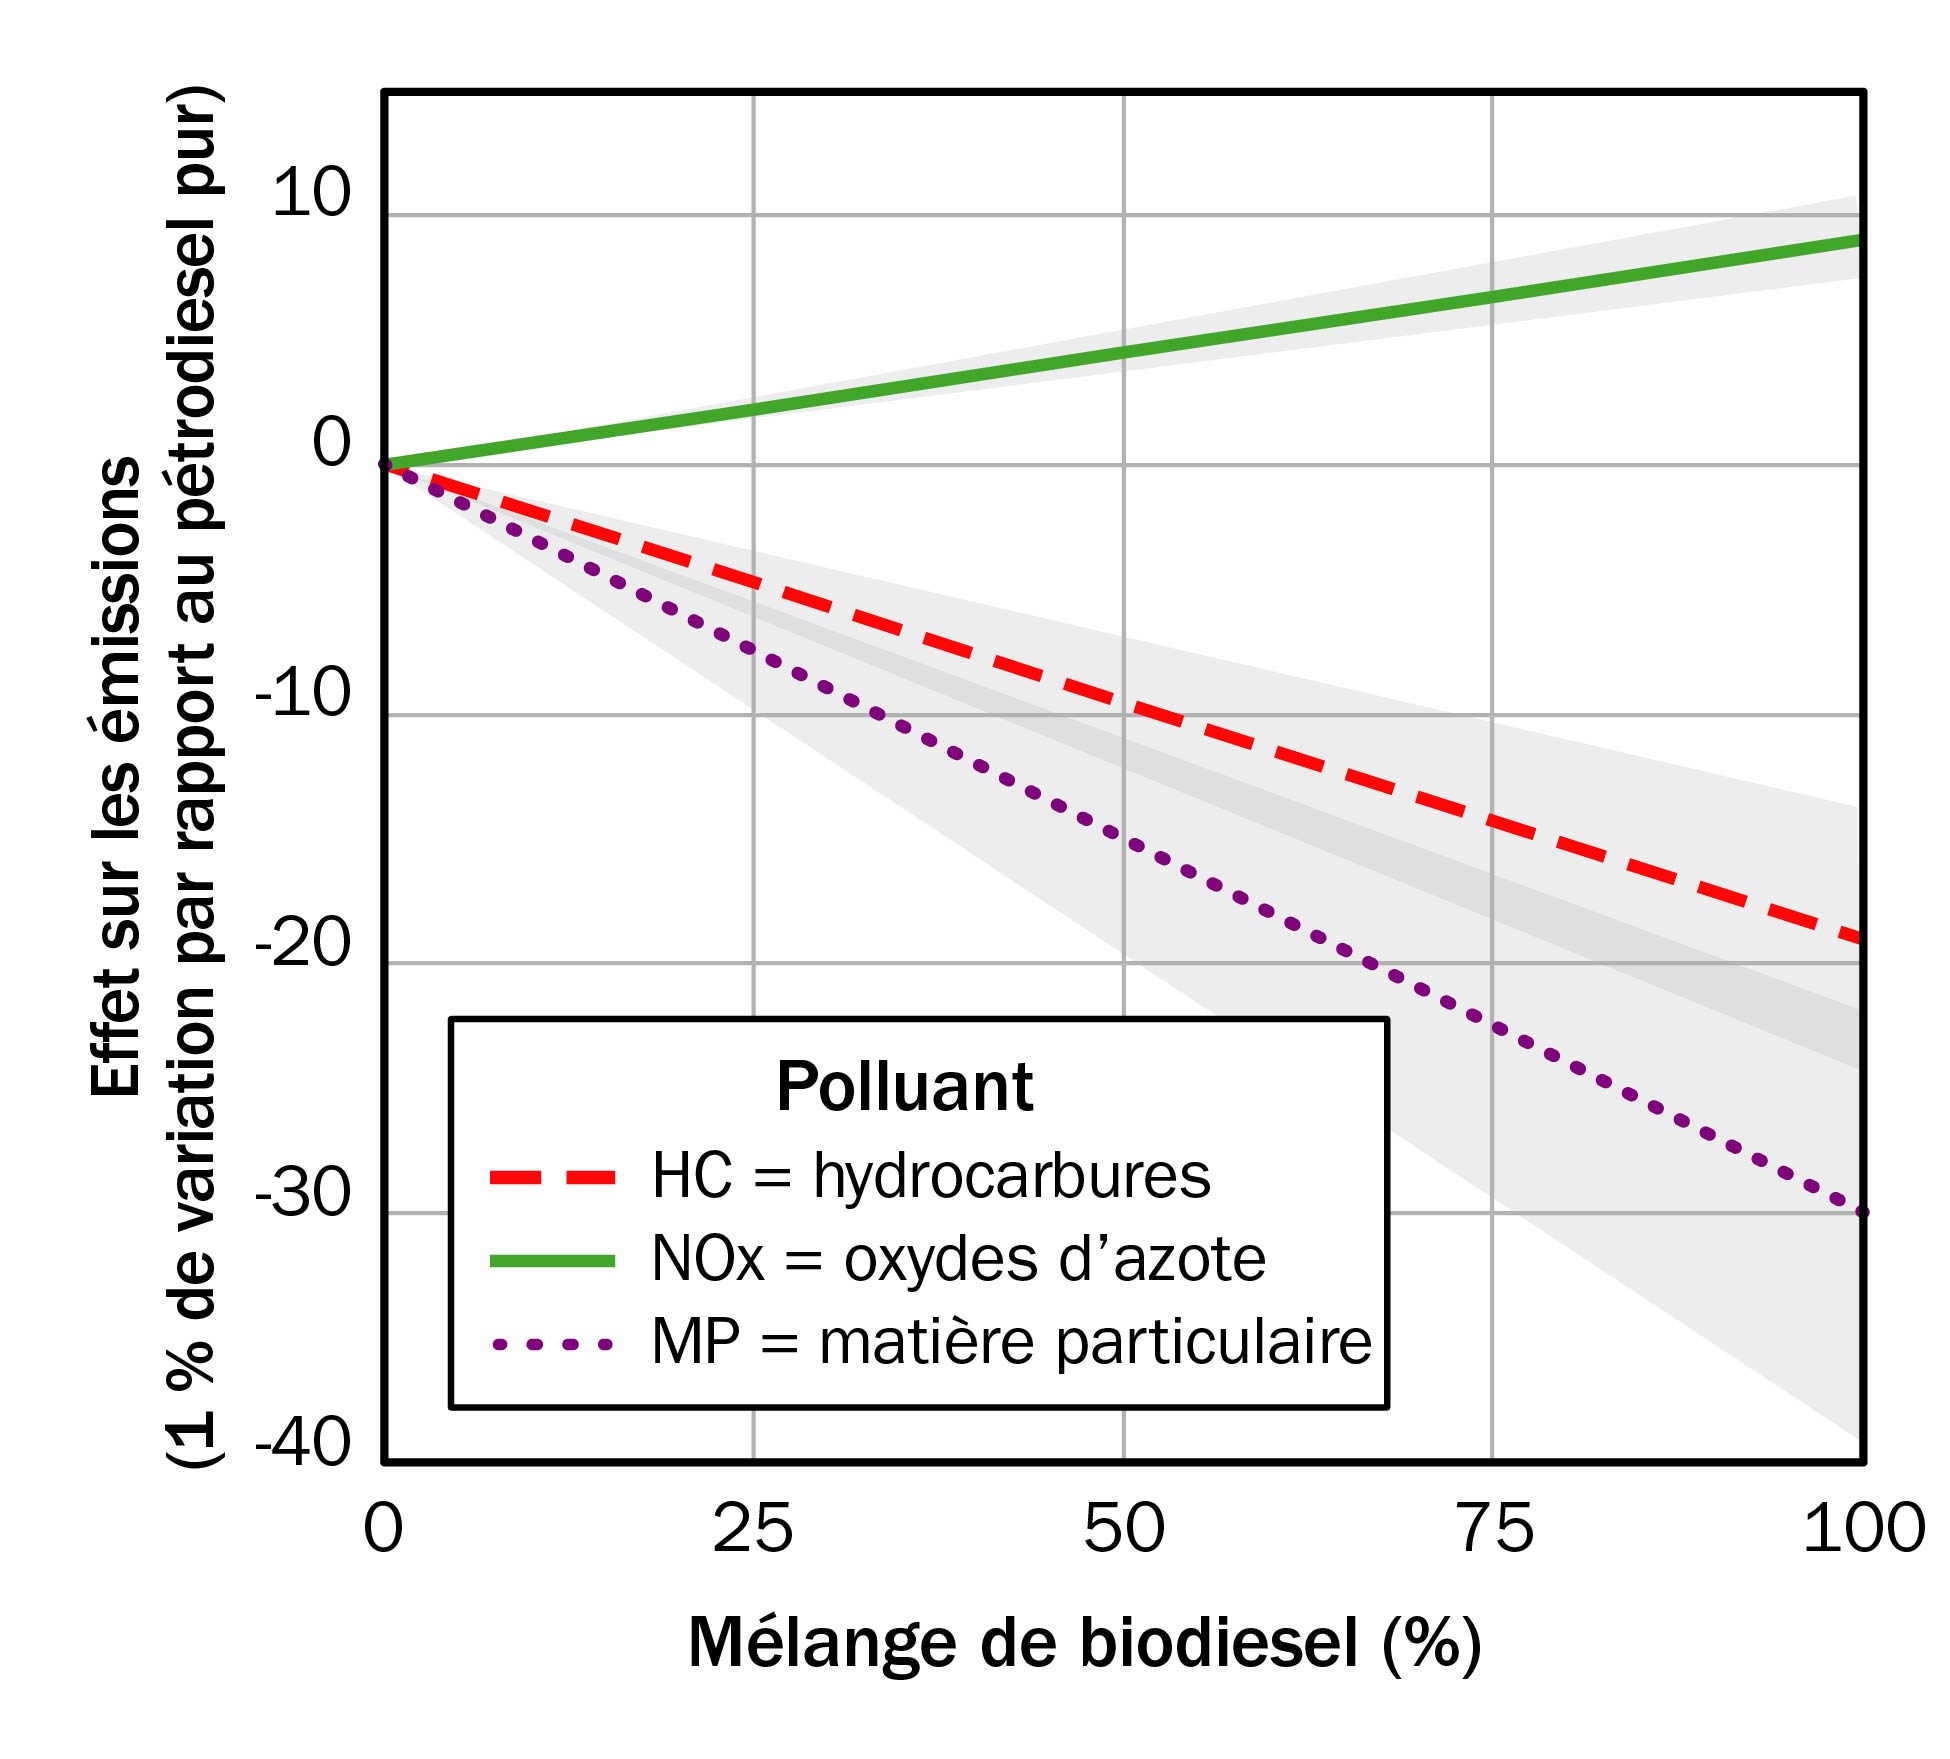 Un graphique montrant l’effet linéaire de l’augmentation du pourcentage de biodiesel dans un mélange de diesel sur les émissions d’oxydes d’azote (NOx), d’hydrocarbures (HC) et de matière particulaire (MP) d’un moteur diesel. Les émissions de HC et de MP diminuent, tandis que celles de NOx augmentent légèrement avec la hausse des mélanges de biodiesel.